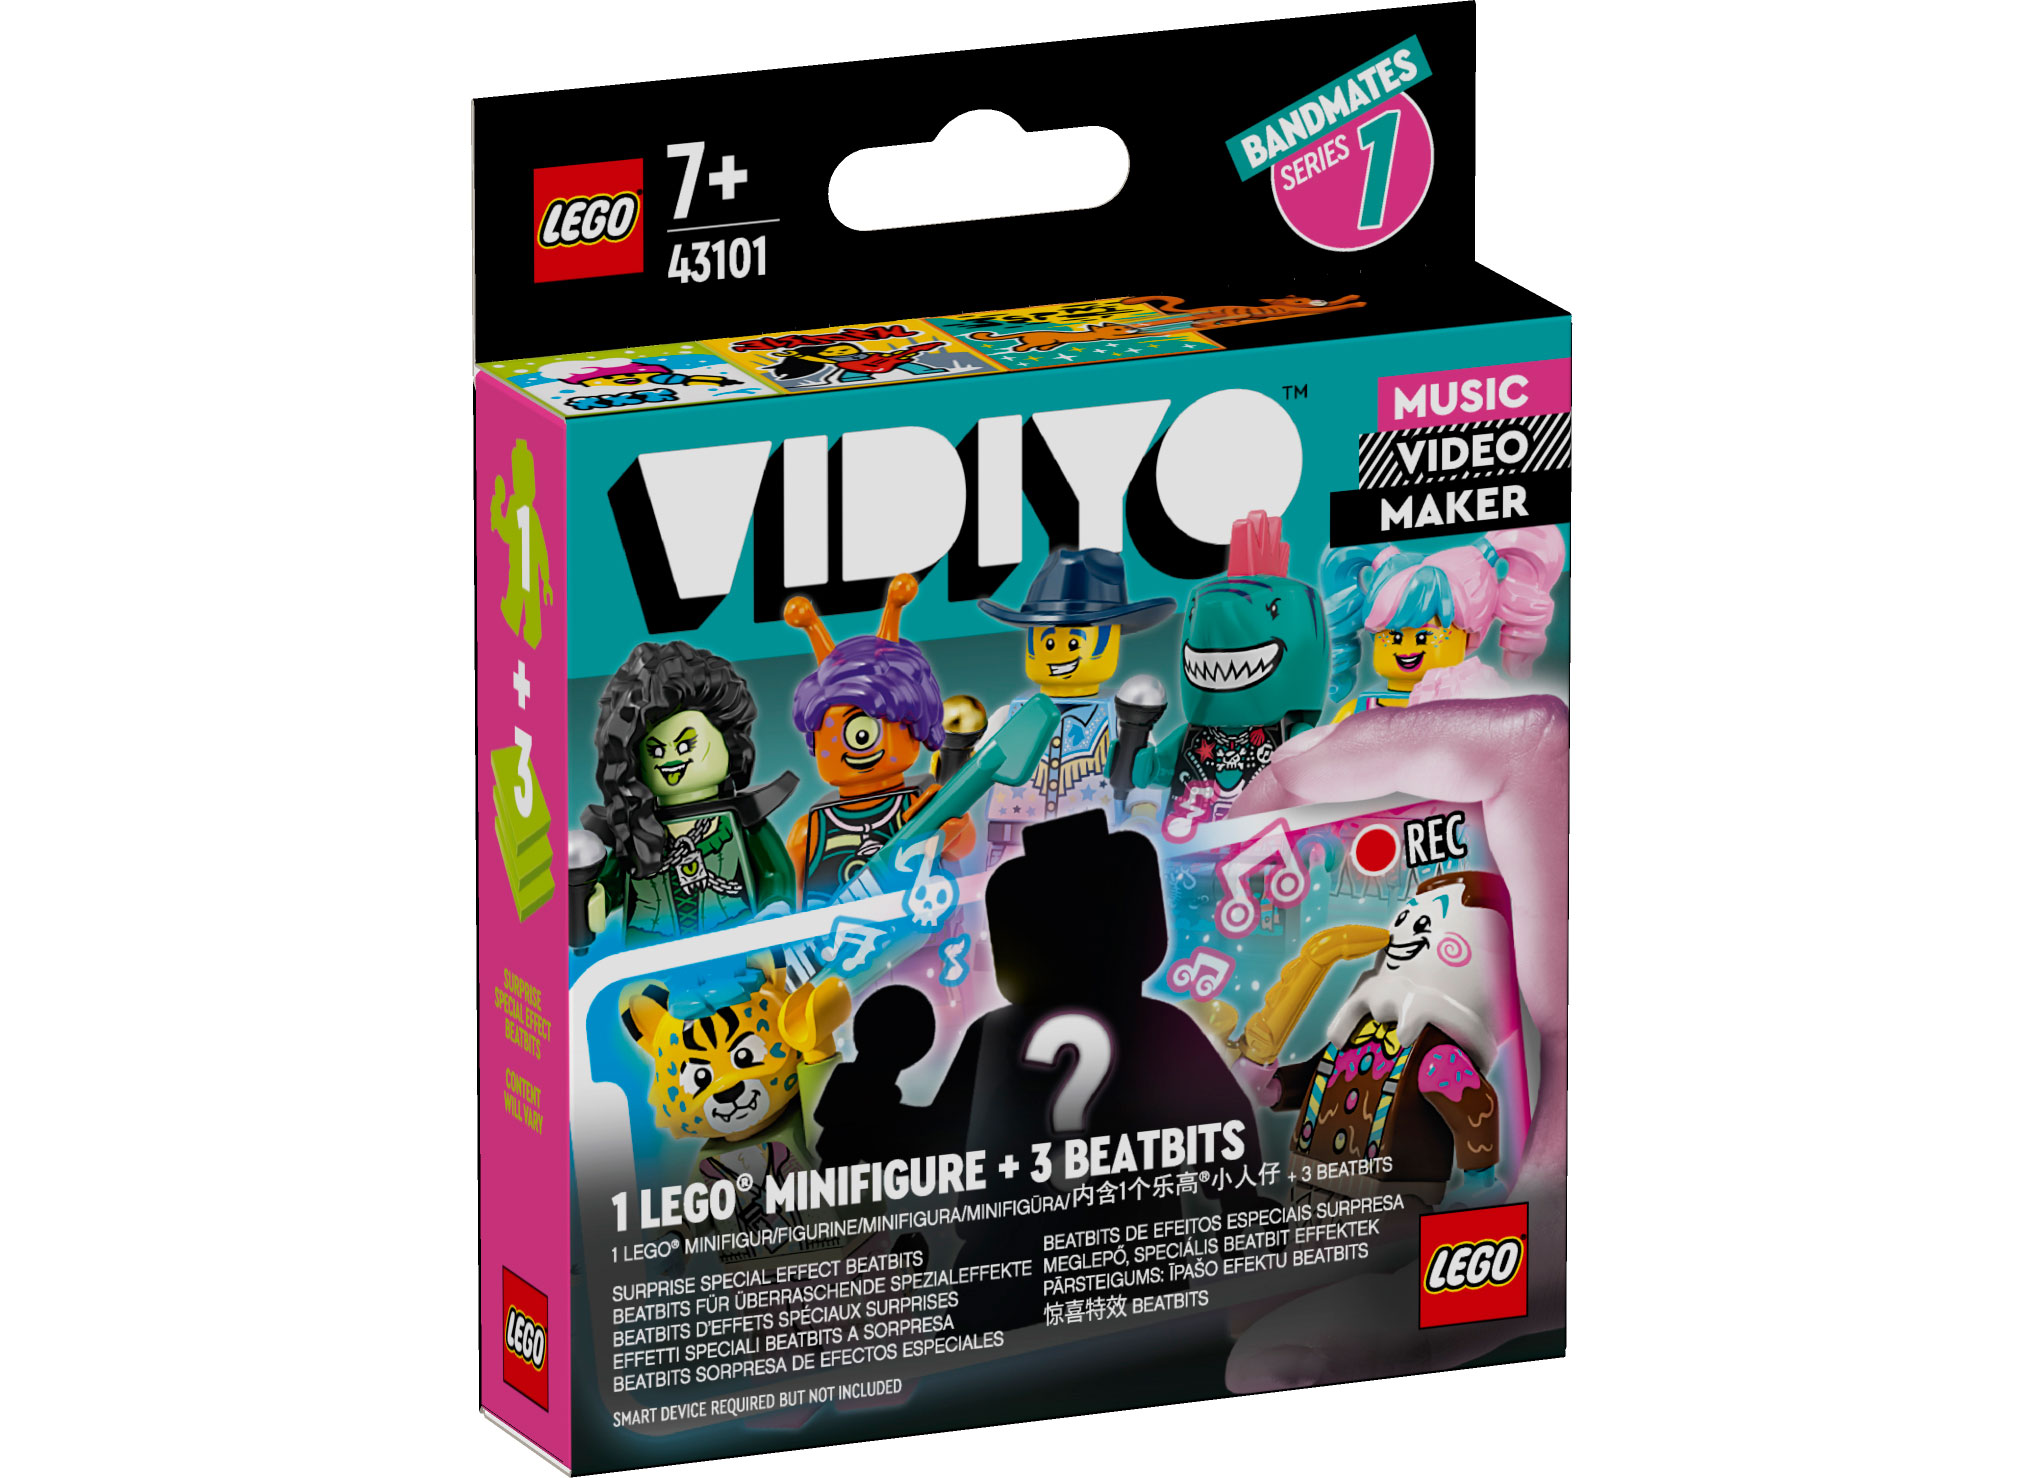 LEGO Vidiyo - Bandmates (43101) | LEGO